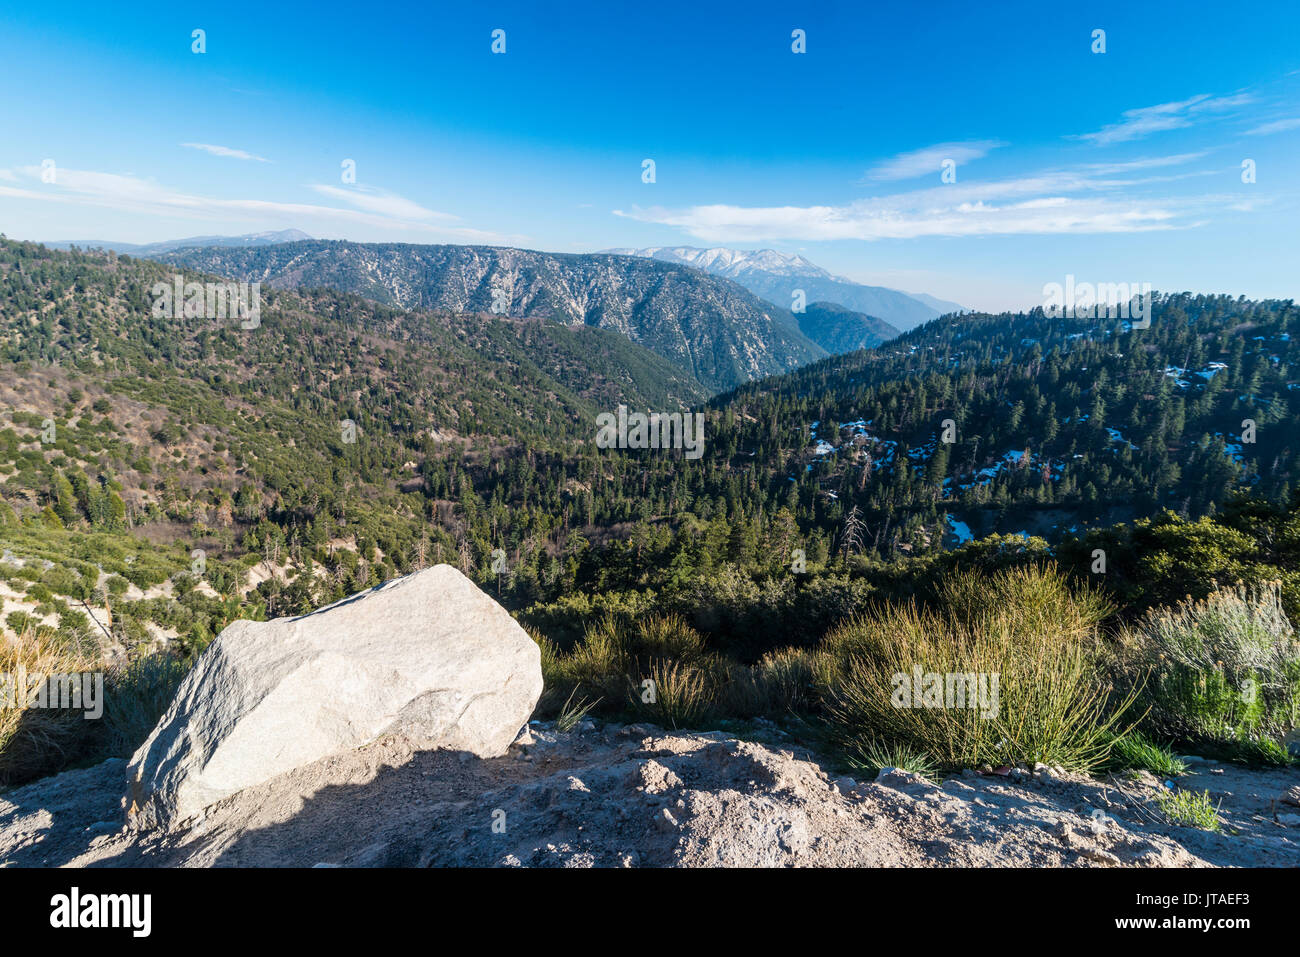 Big Bear Mountain, dans les montagnes de San Bernardino, Californie, États-Unis d'Amérique, Amérique du Nord Banque D'Images